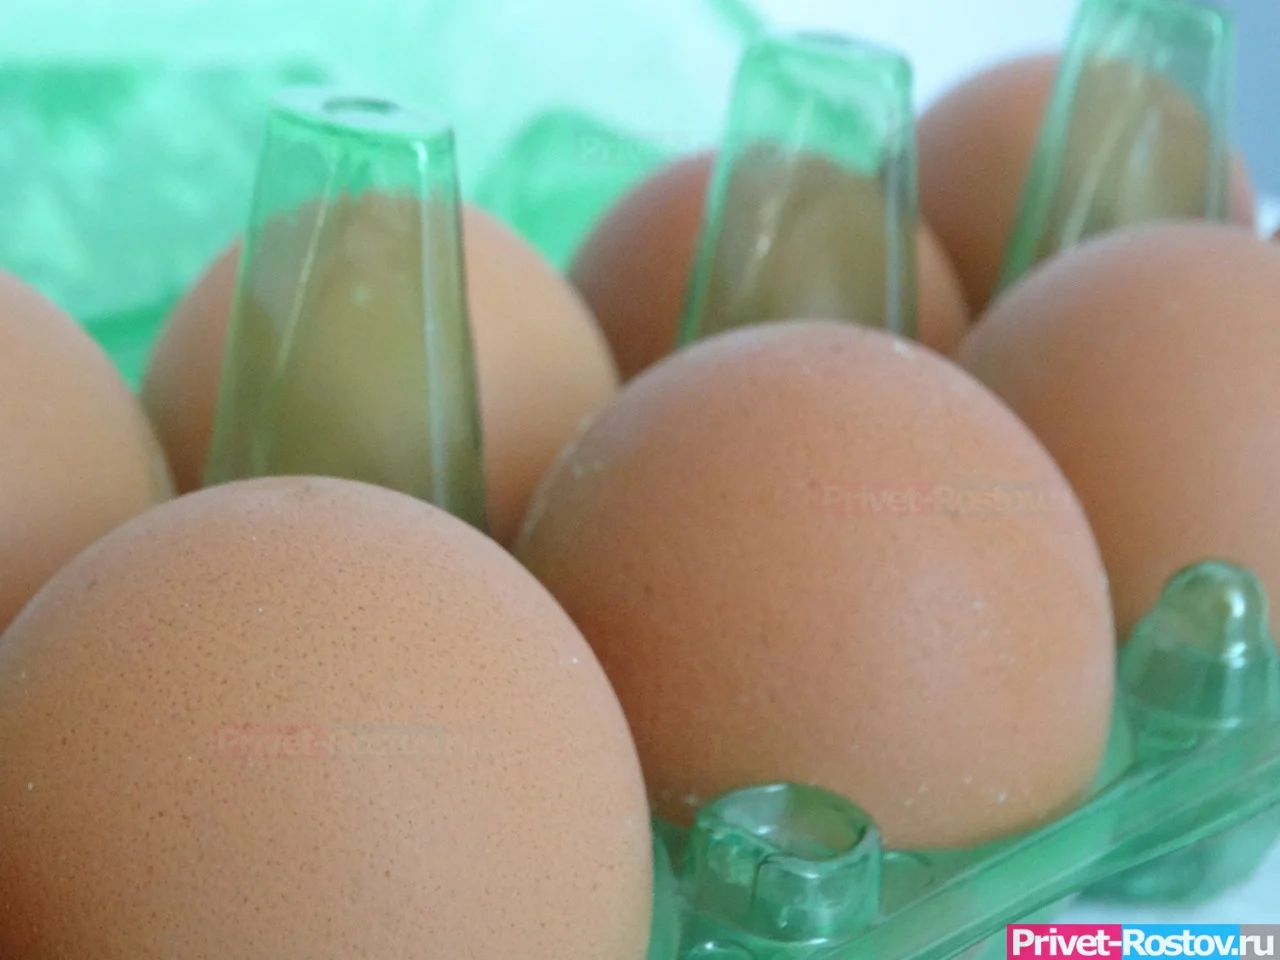 ФАС запретила повышать цены на яйца в РФ в преддверии Пасхи